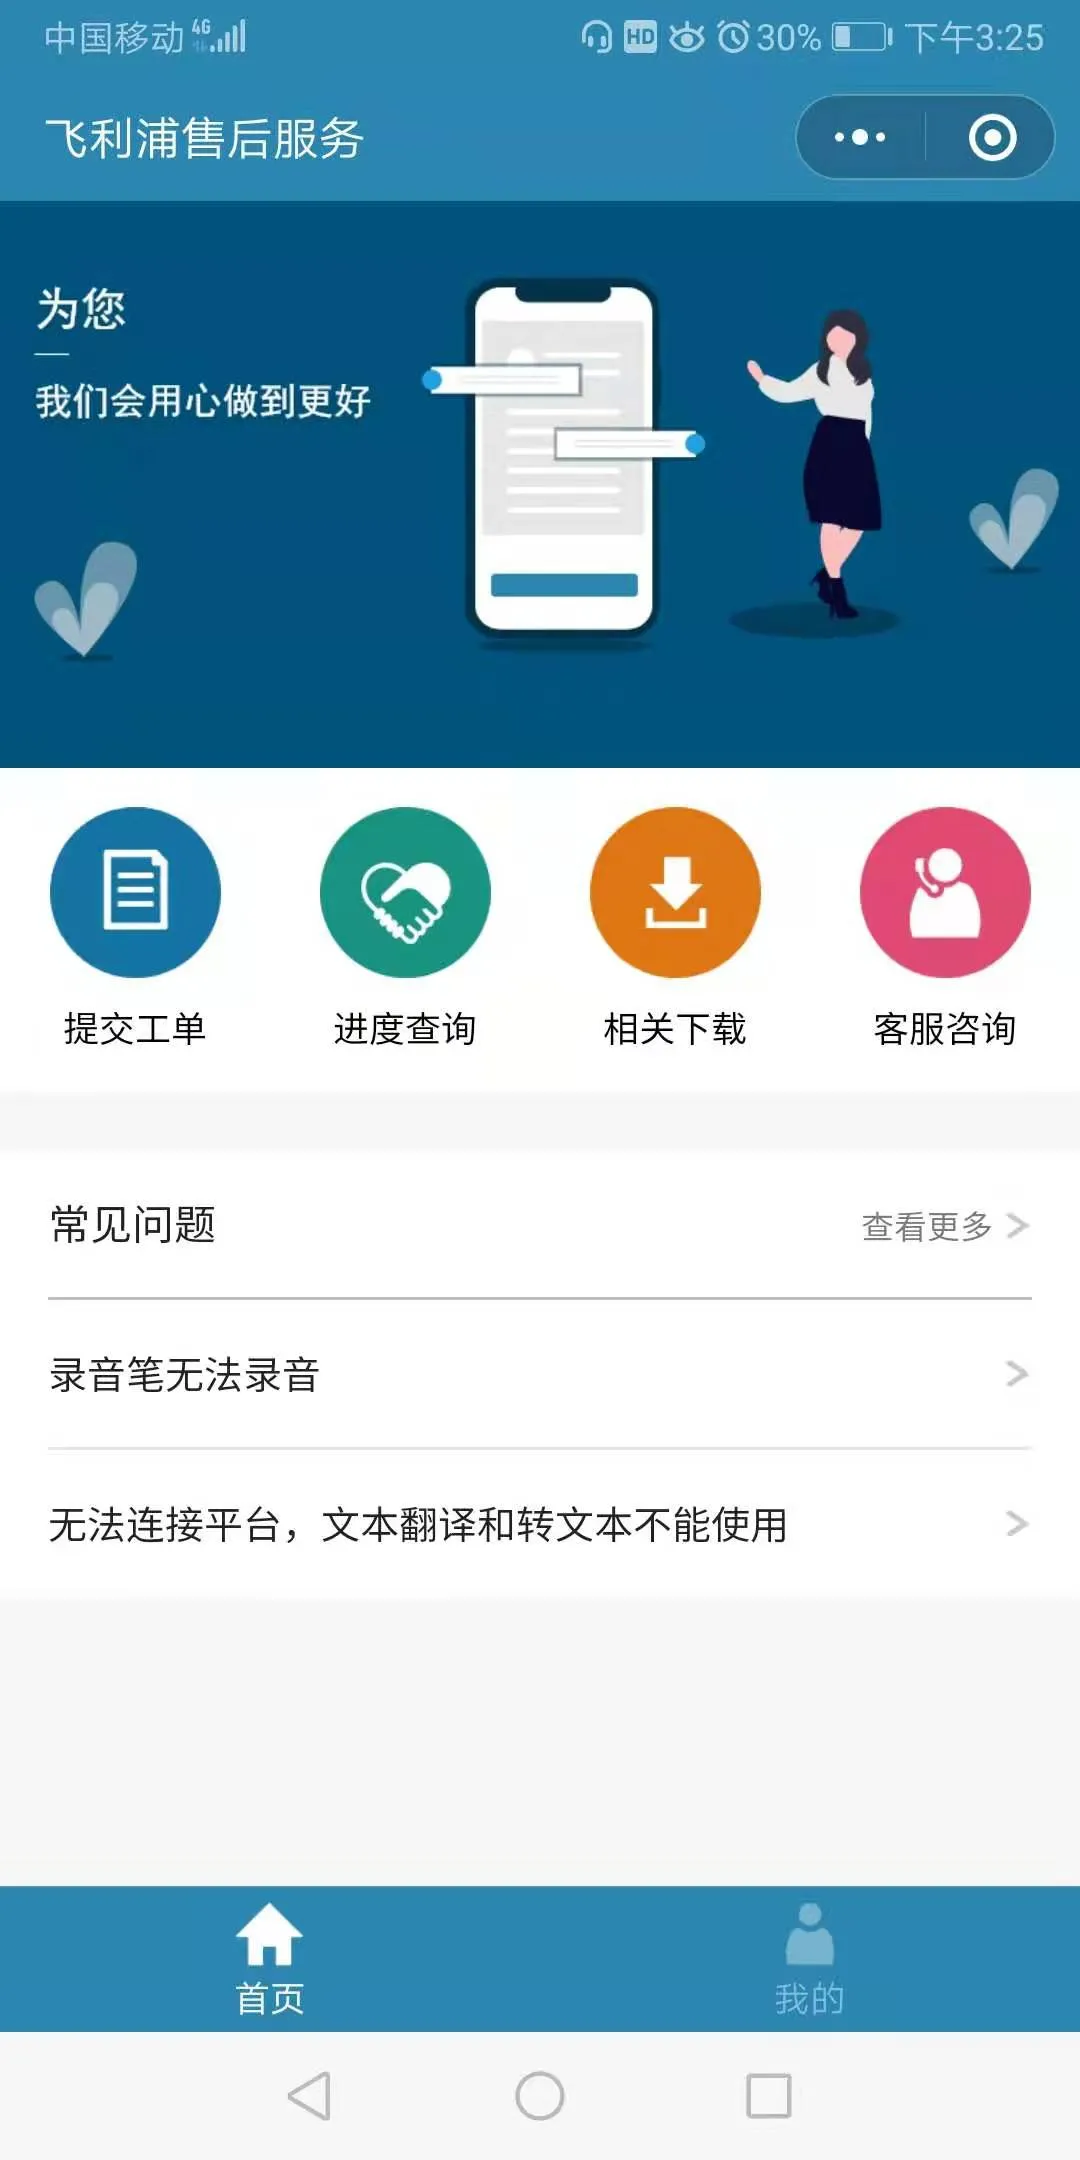 京华&飞利浦售后服务微信小程序正式开通